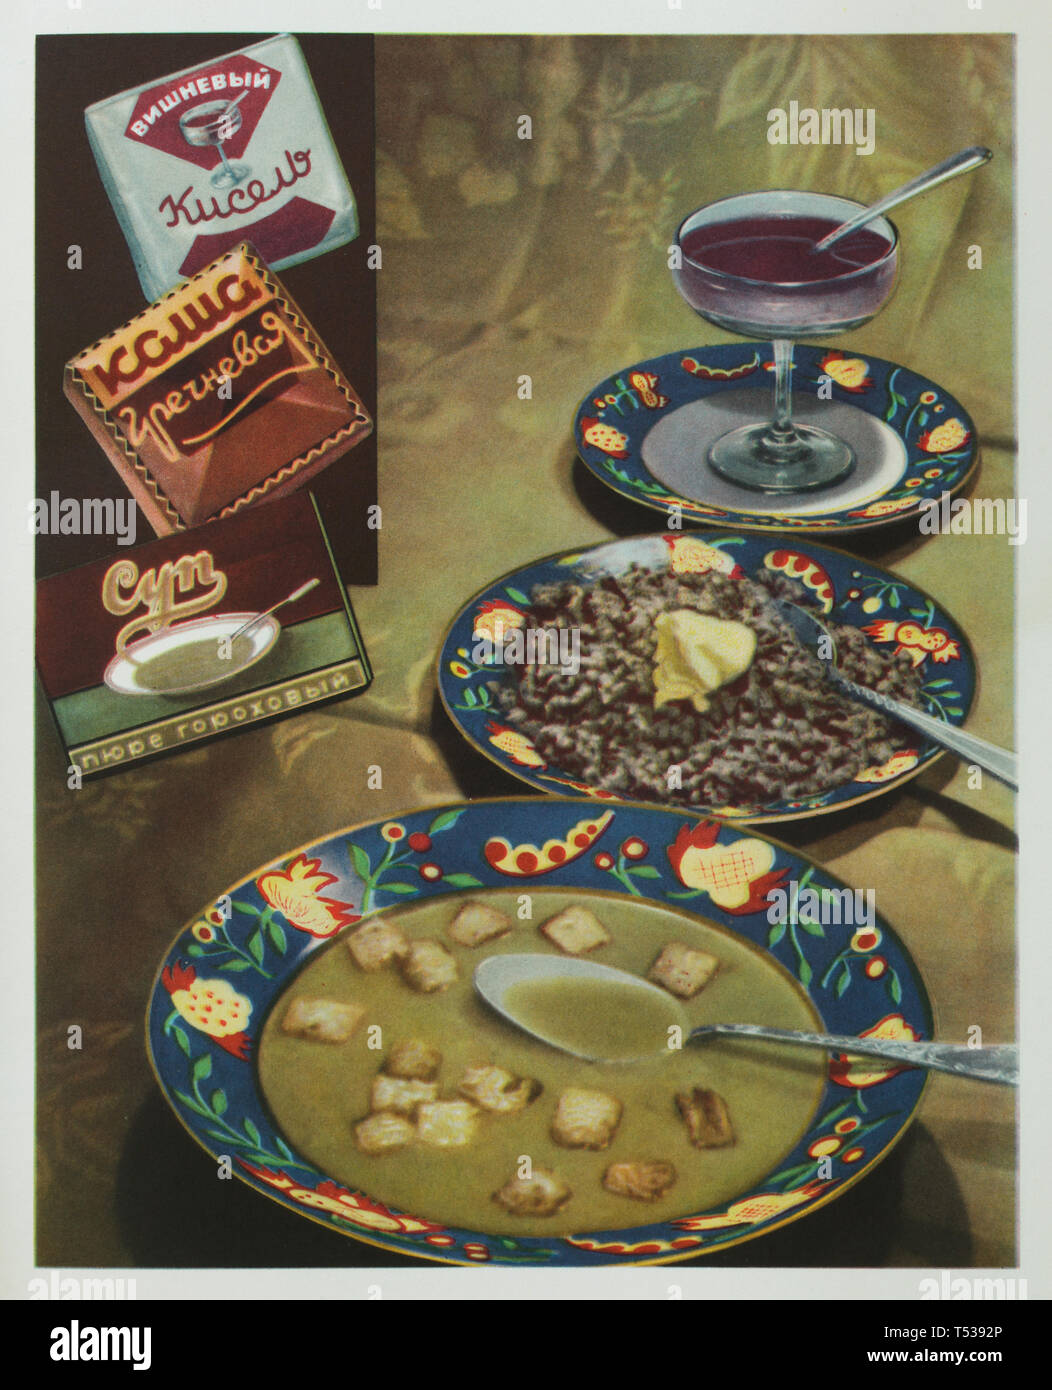 Sowjetische instant Erbsen Cremesuppe, instant Buchweizen Brei und Instant cherry Kissel (Russische zähflüssige Frucht Getränk) dargestellt (von Vordergrund und Hintergrund) in der Farbe Illustration im Buch der Schmackhafte und gesunde Lebensmittel in der Sowjetunion veröffentlicht (1953). Stockfoto